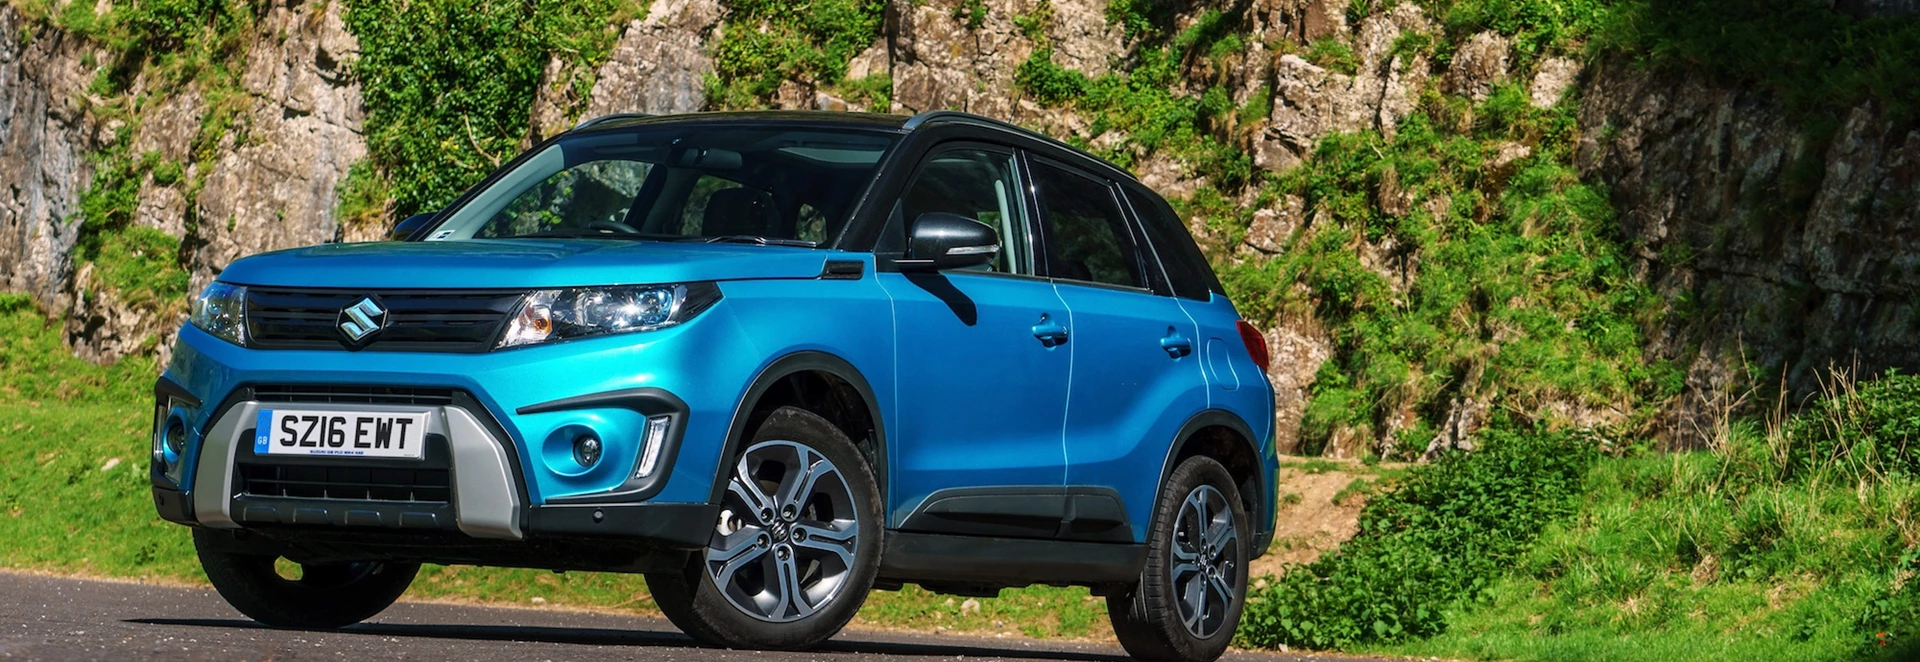 Suzuki removes diesel from UK range